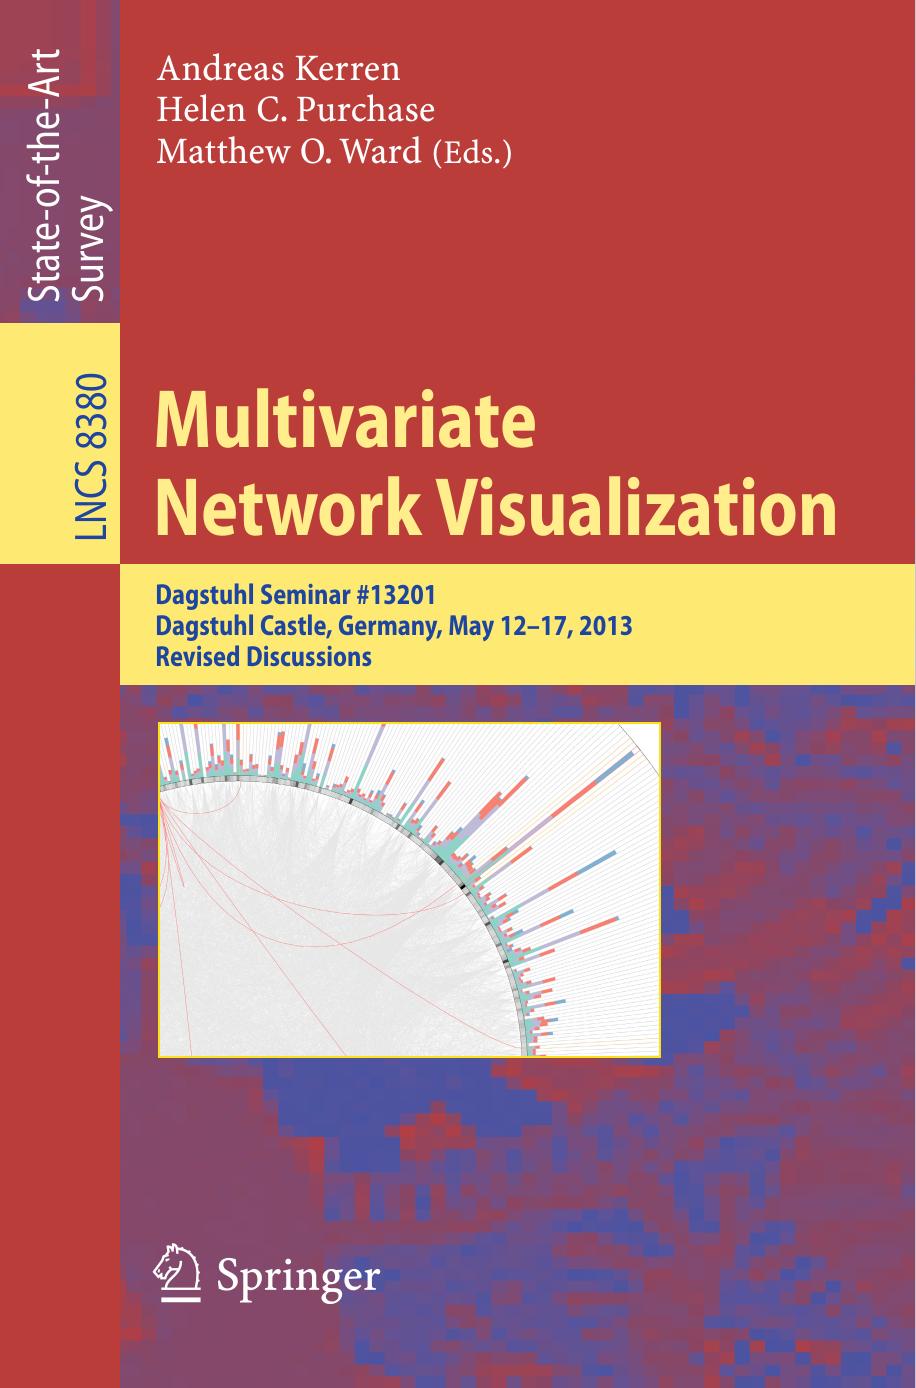 (eBook PDF)Multivariate Network Visualization by Andreas Kerren,Helen Purchase,Matthew O. Ward